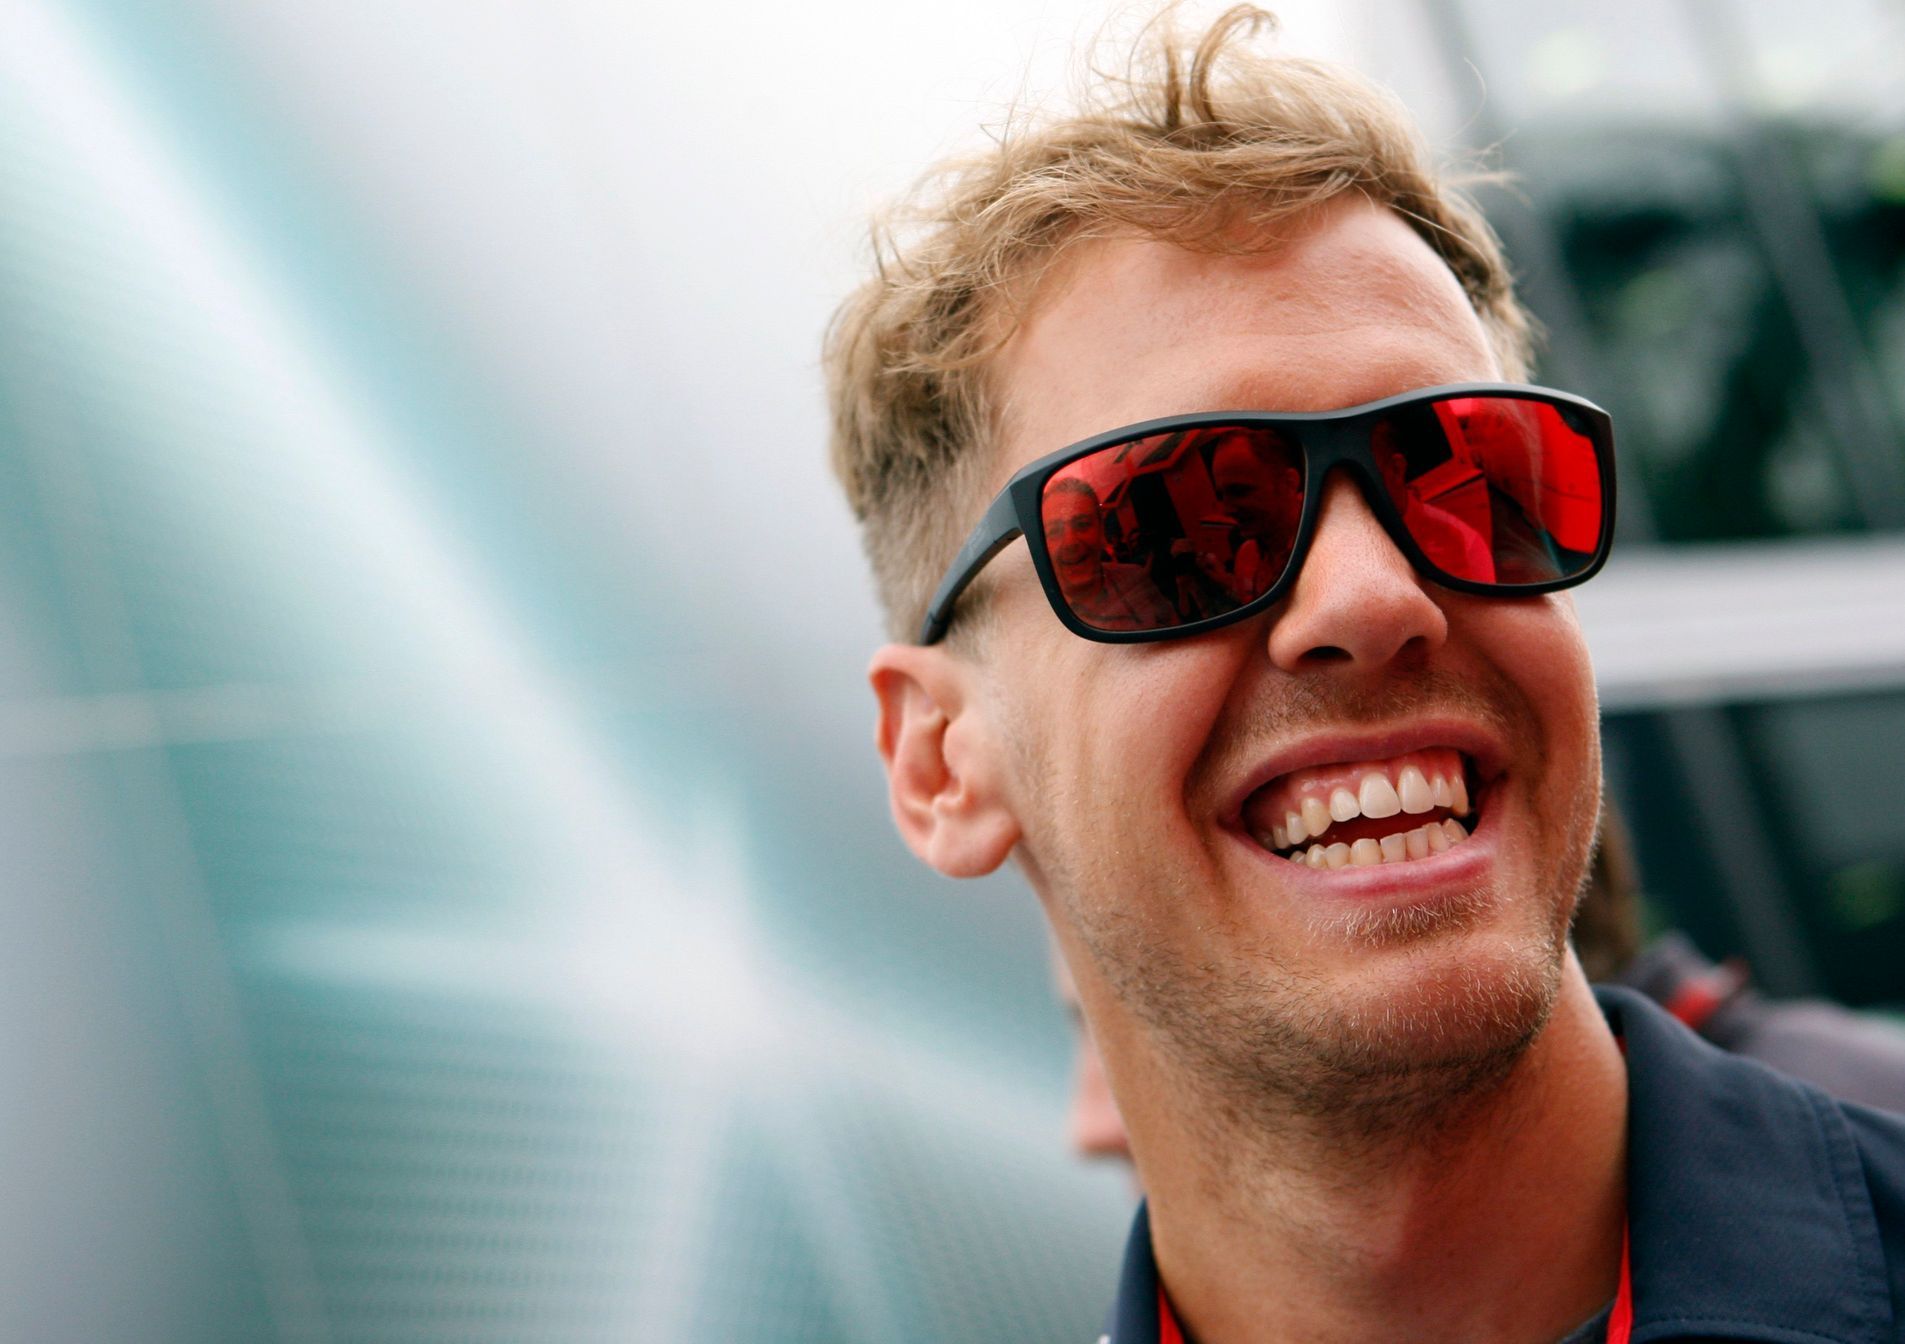 F1, VC Maďarska 2013: Sebastian Vettel, Red Bull